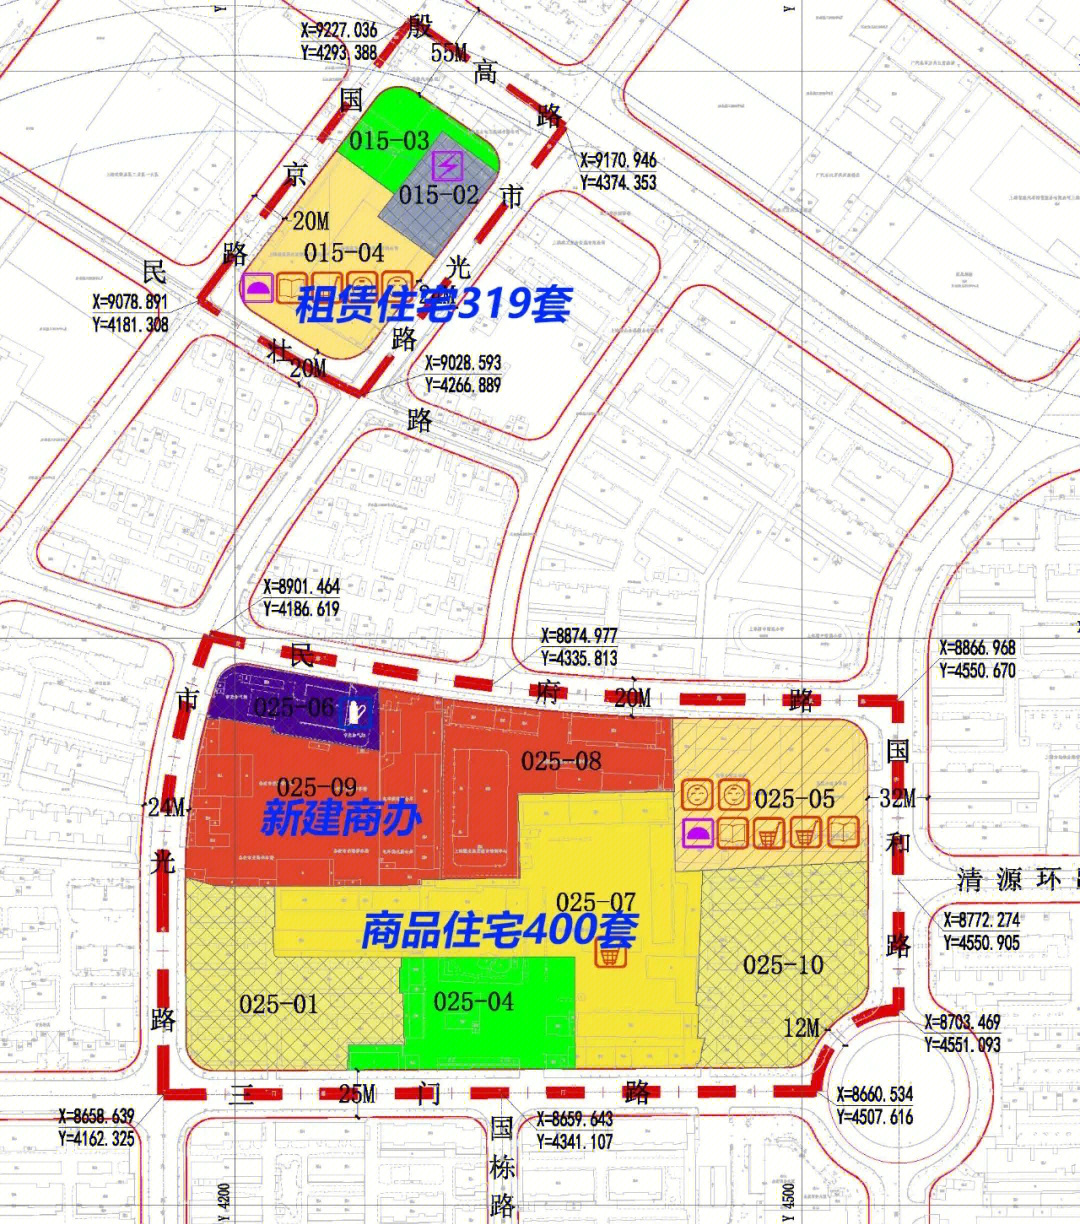 规划指出:为推进杨浦区保障性租赁住房建设,并优